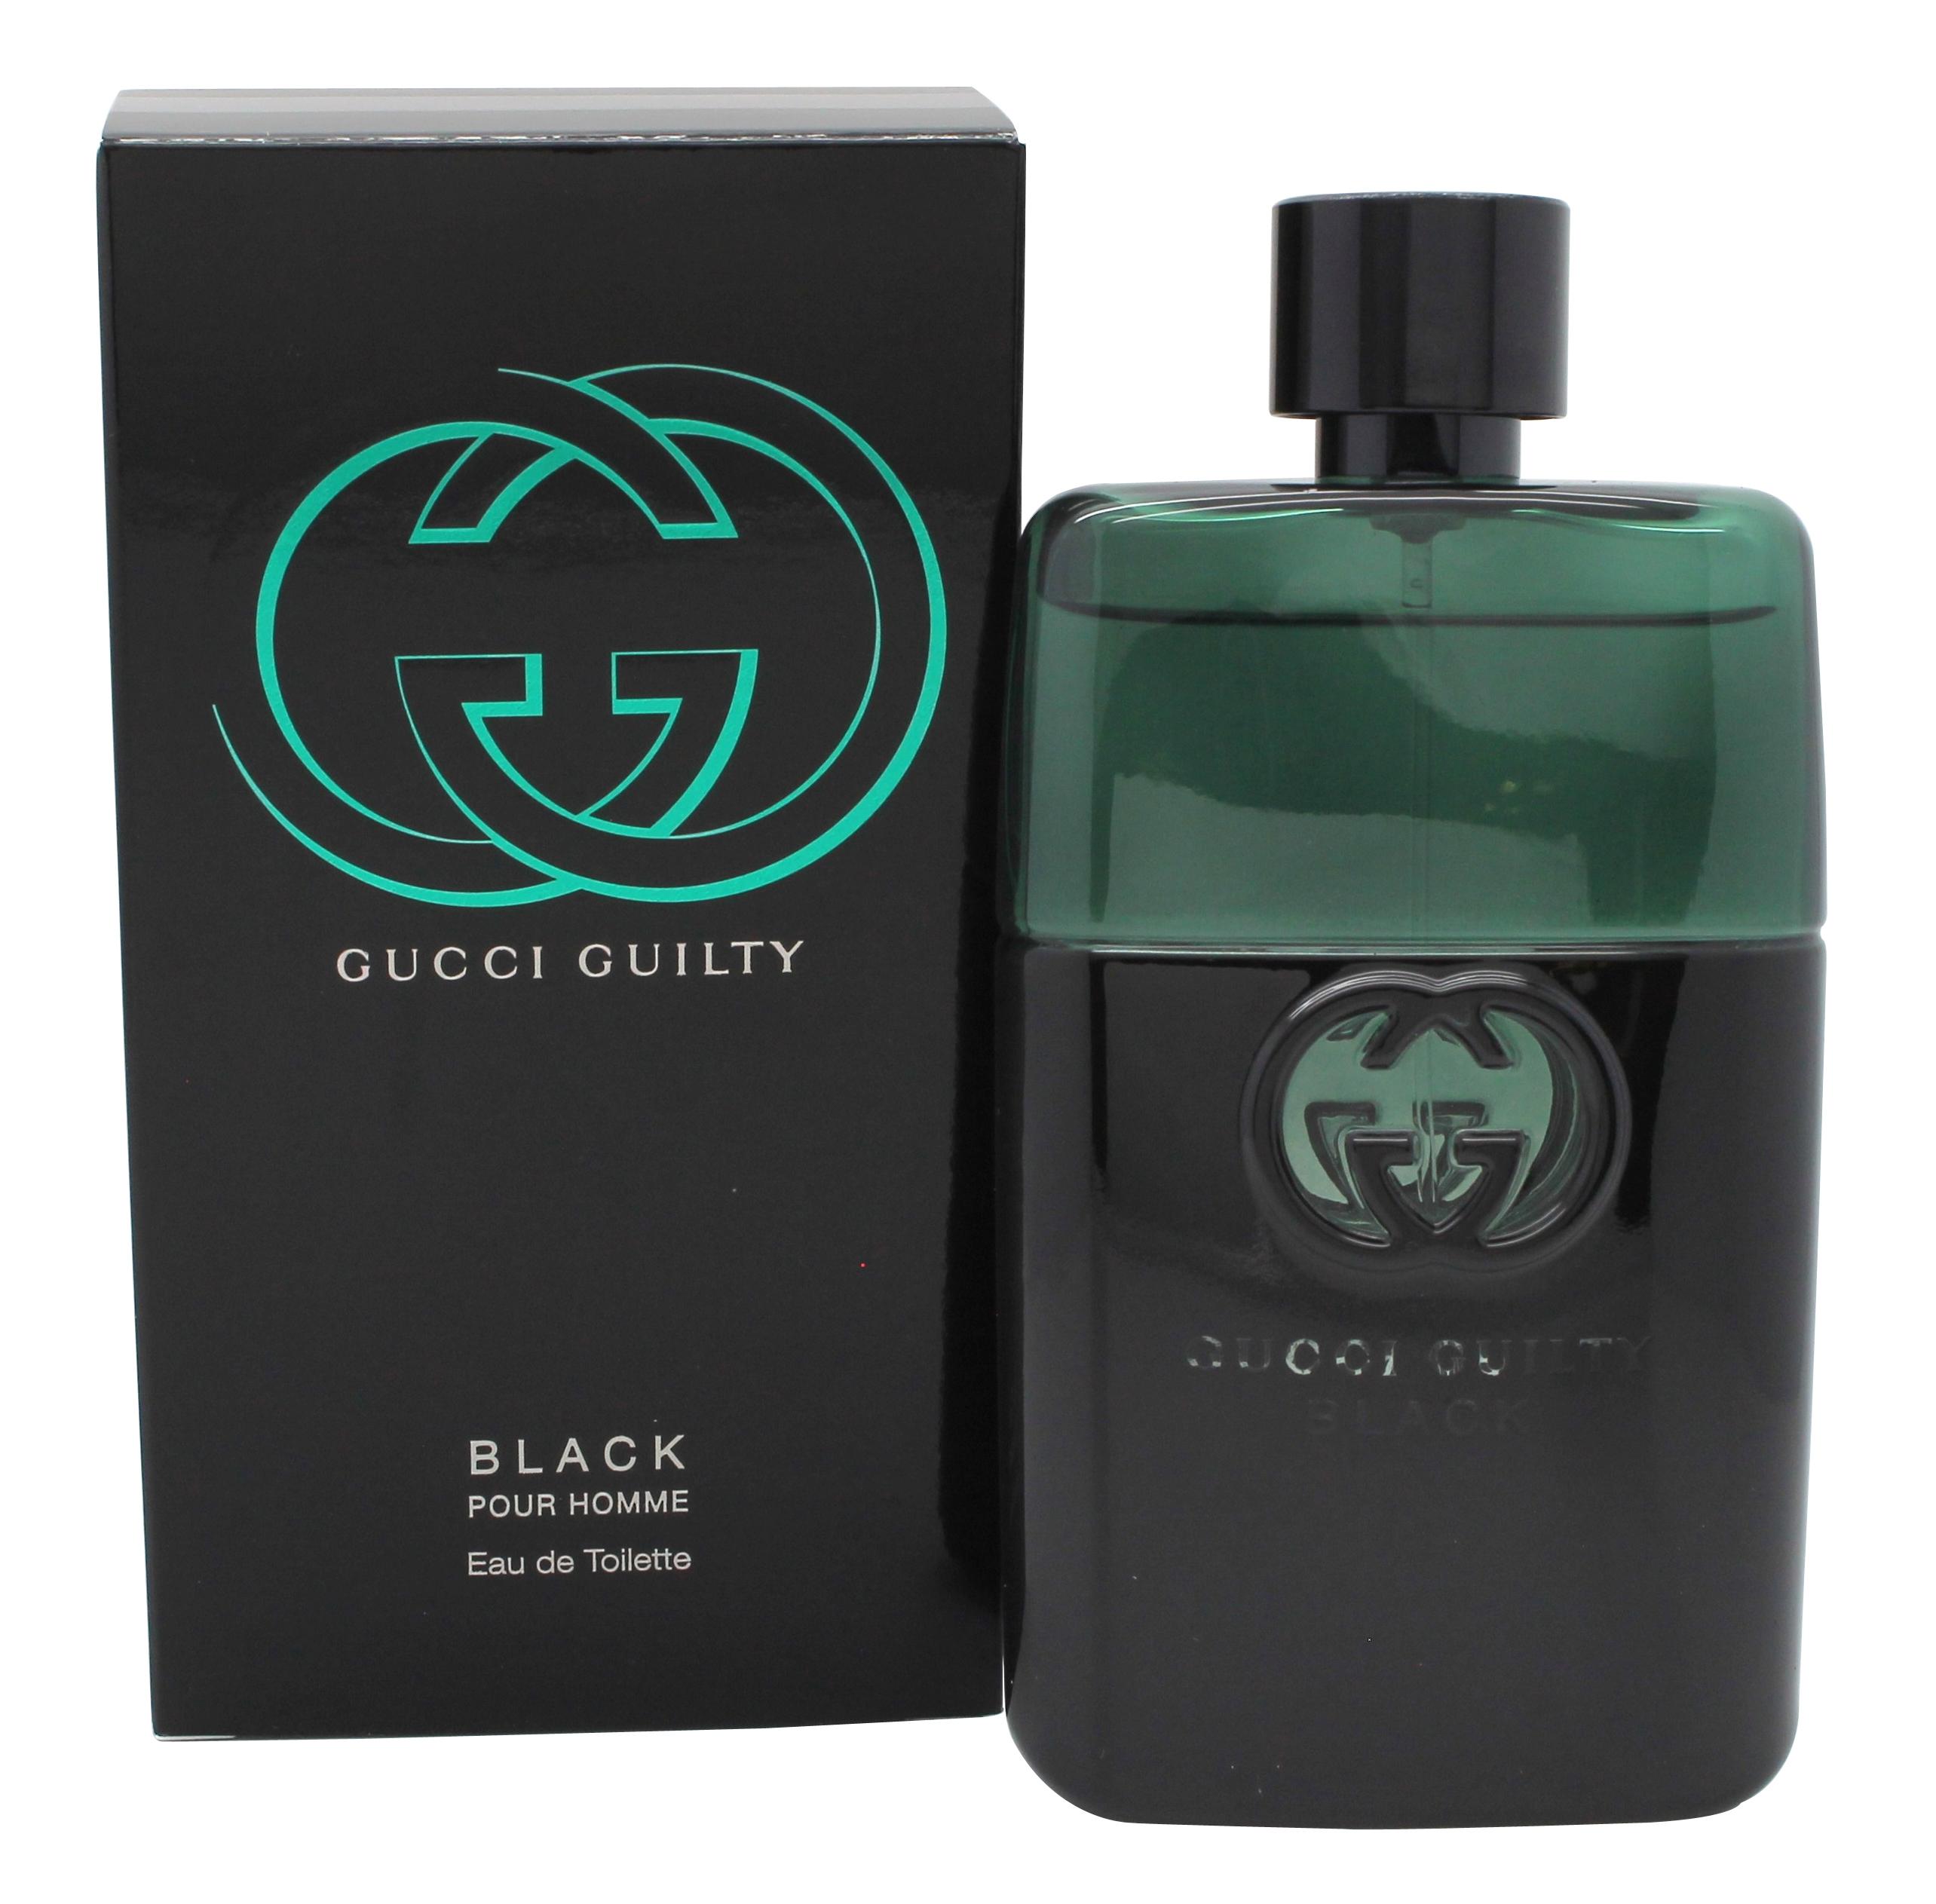 Gucci Guilty Black Pour Homme Eau de Toilette 90ml Spray